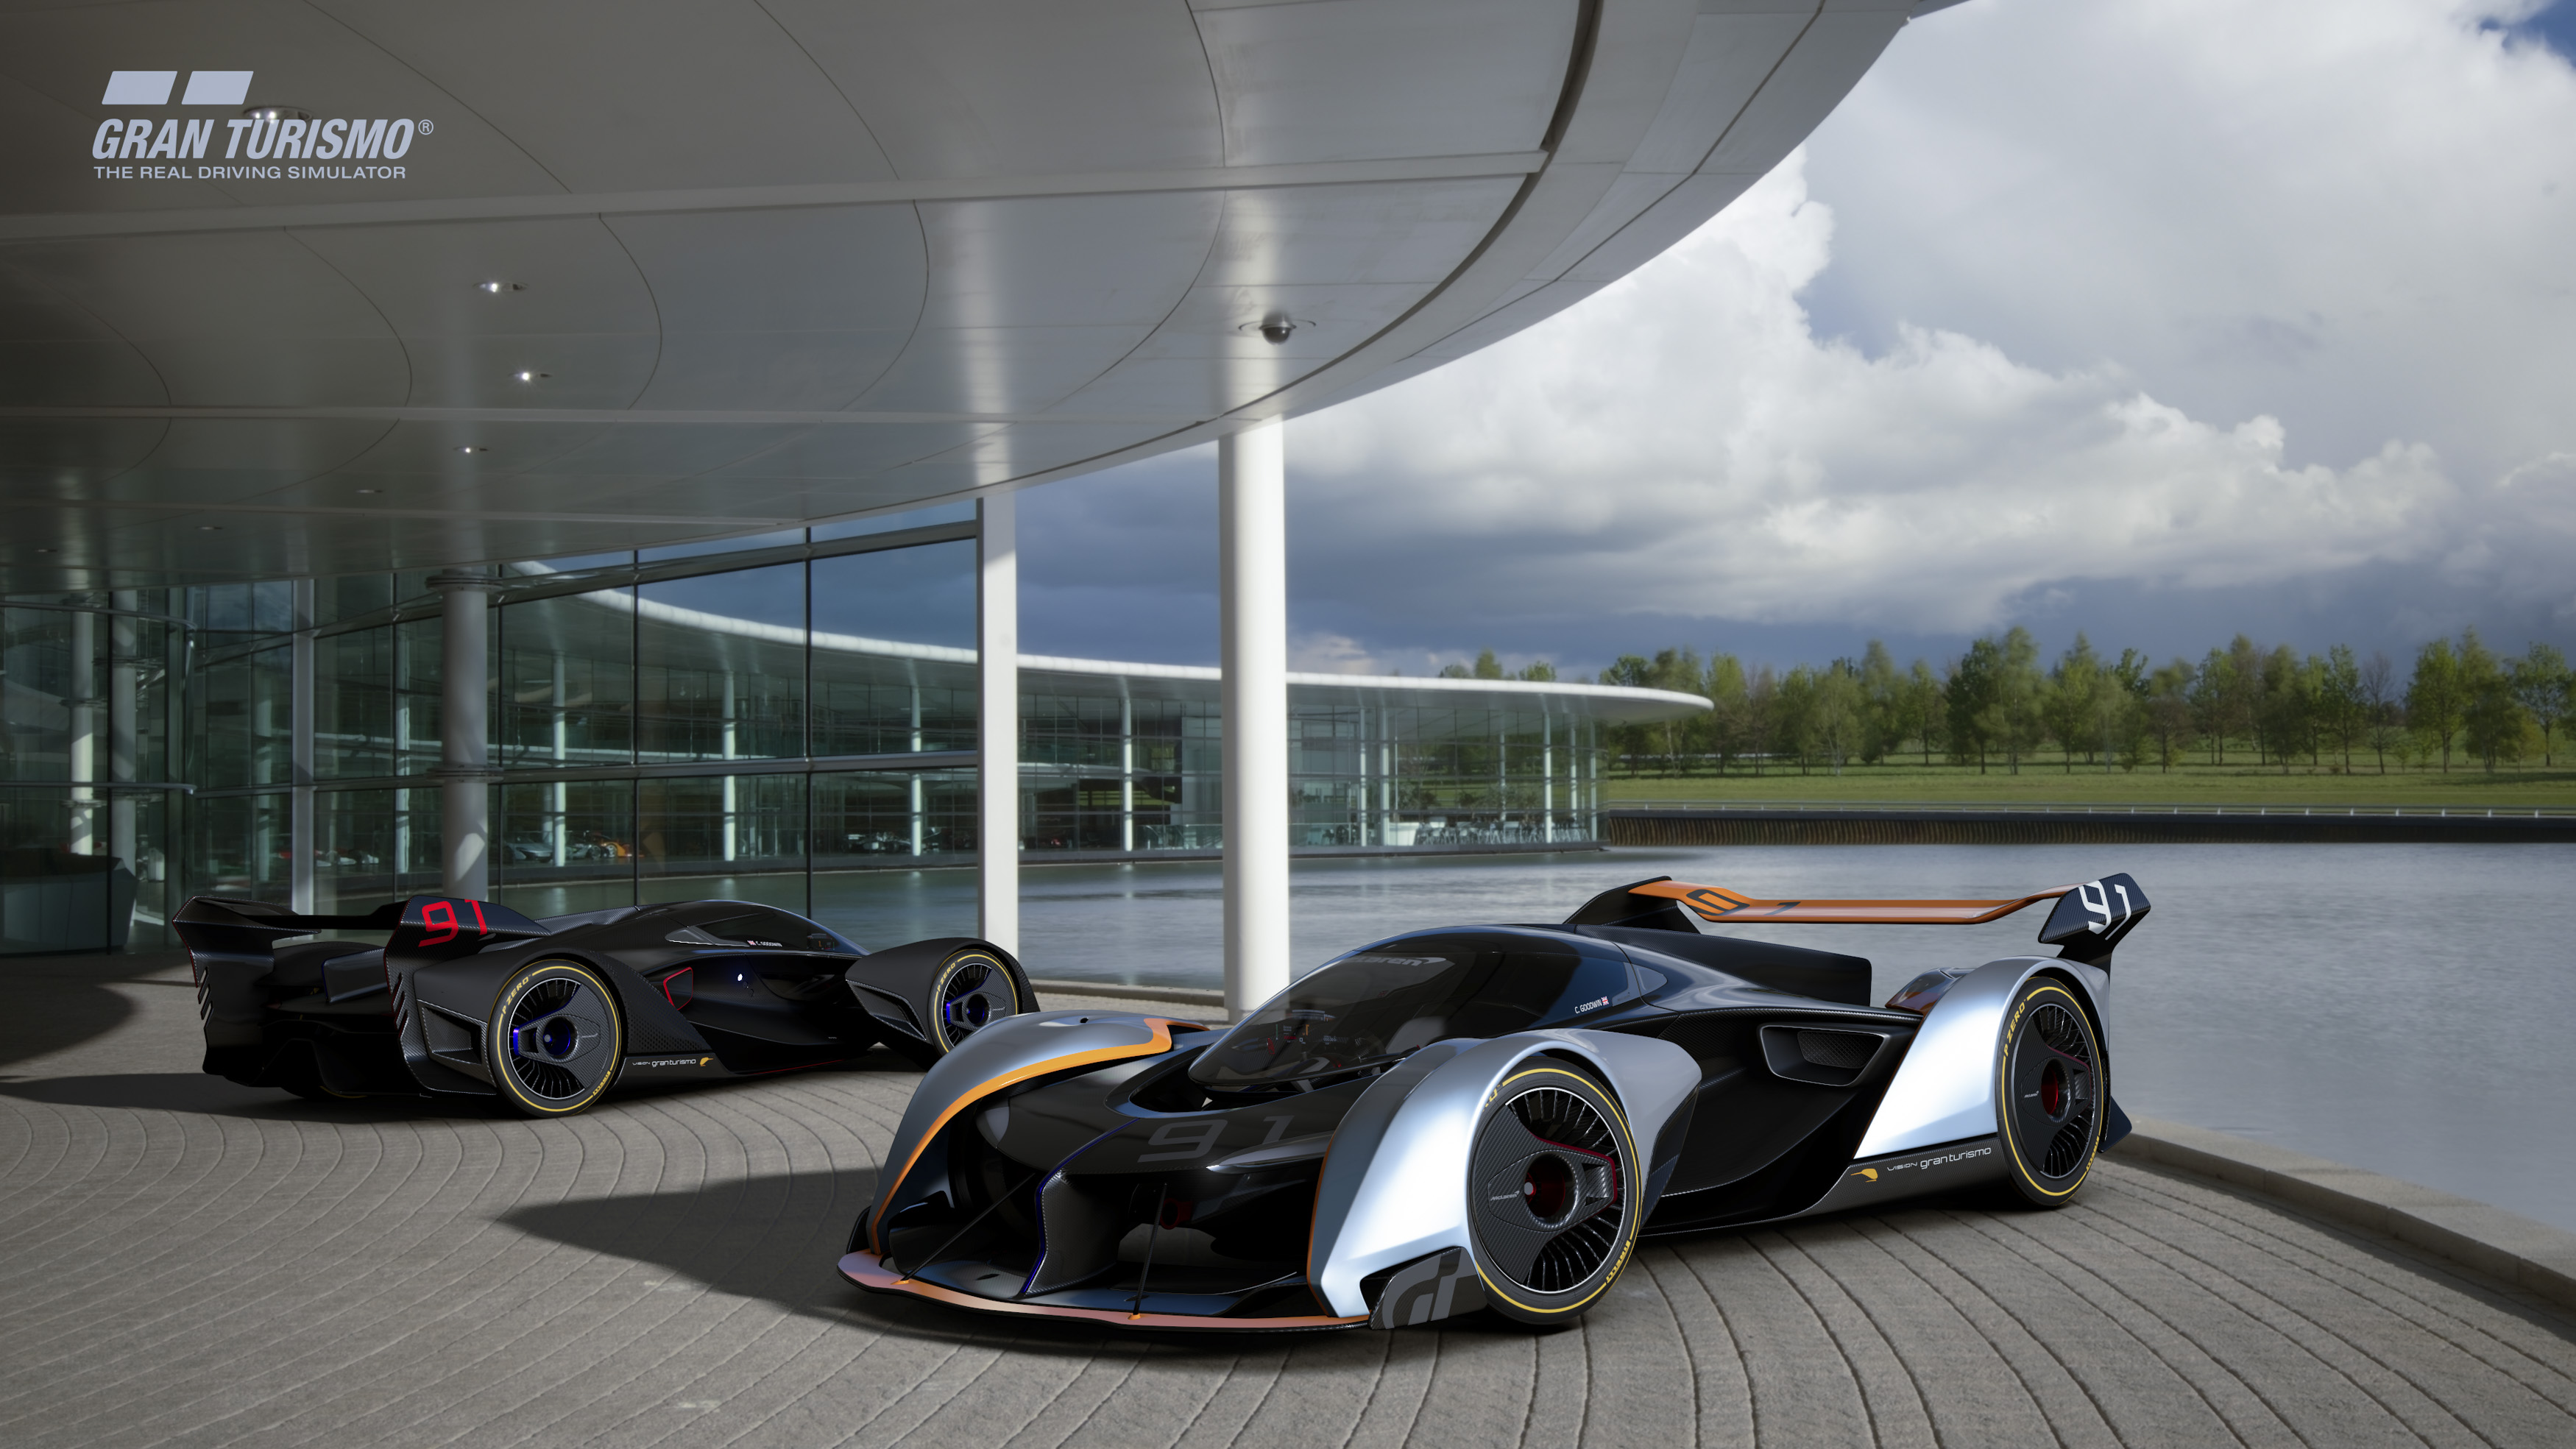 McLaren builds a virtual hypercar for next Gran Turismo game | Ars Technica